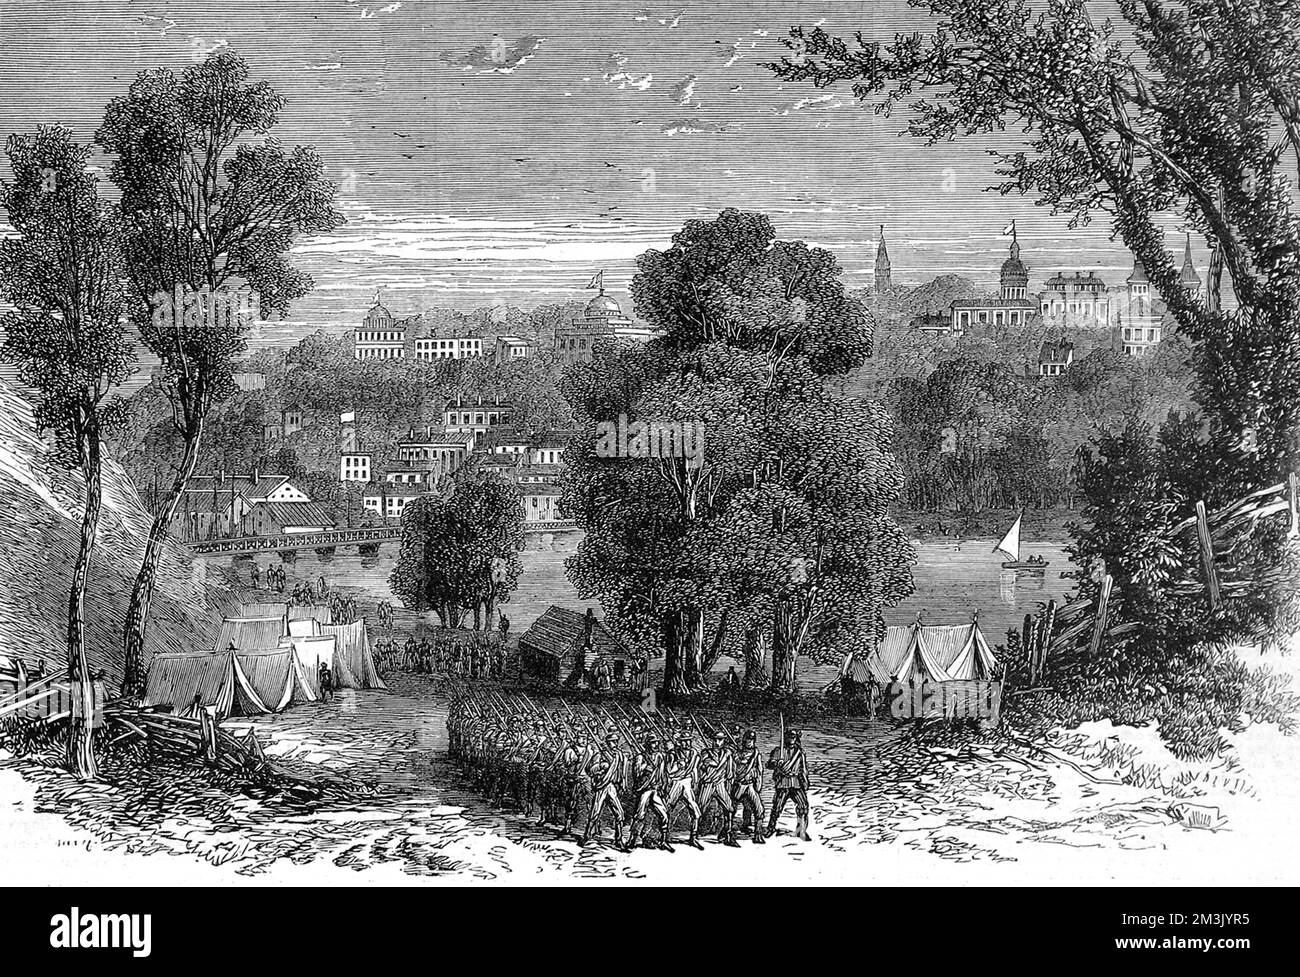 Imposante Szene von Petersburg, Virginia, mit Truppen im Vordergrund während des Amerikanischen Bürgerkriegs. Unionistische Truppen haben die Gelegenheit verpasst, Petersburg abzuschneiden, und es kam zu einer neunmonatigen Belagerung. Datum: 1864 Stockfoto